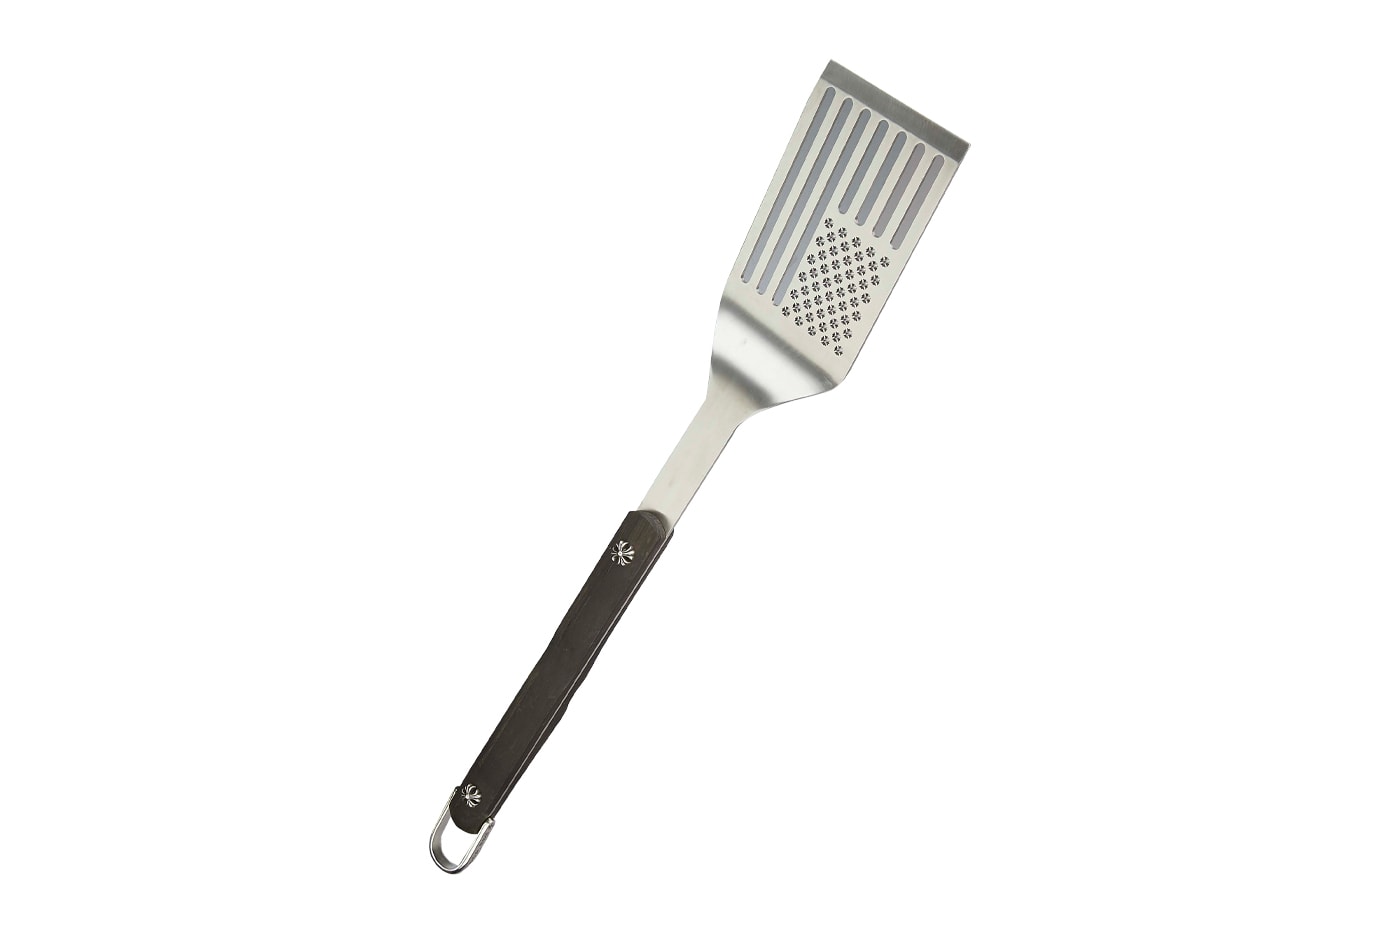 クロムハーツからバーベキューには欠かせないアイテムの数々が登場 Chrome Hearts Essential BBQ grill tools herman laurie lynn stark spatula cutting board carving knife bottle sets bbq fork tongs release